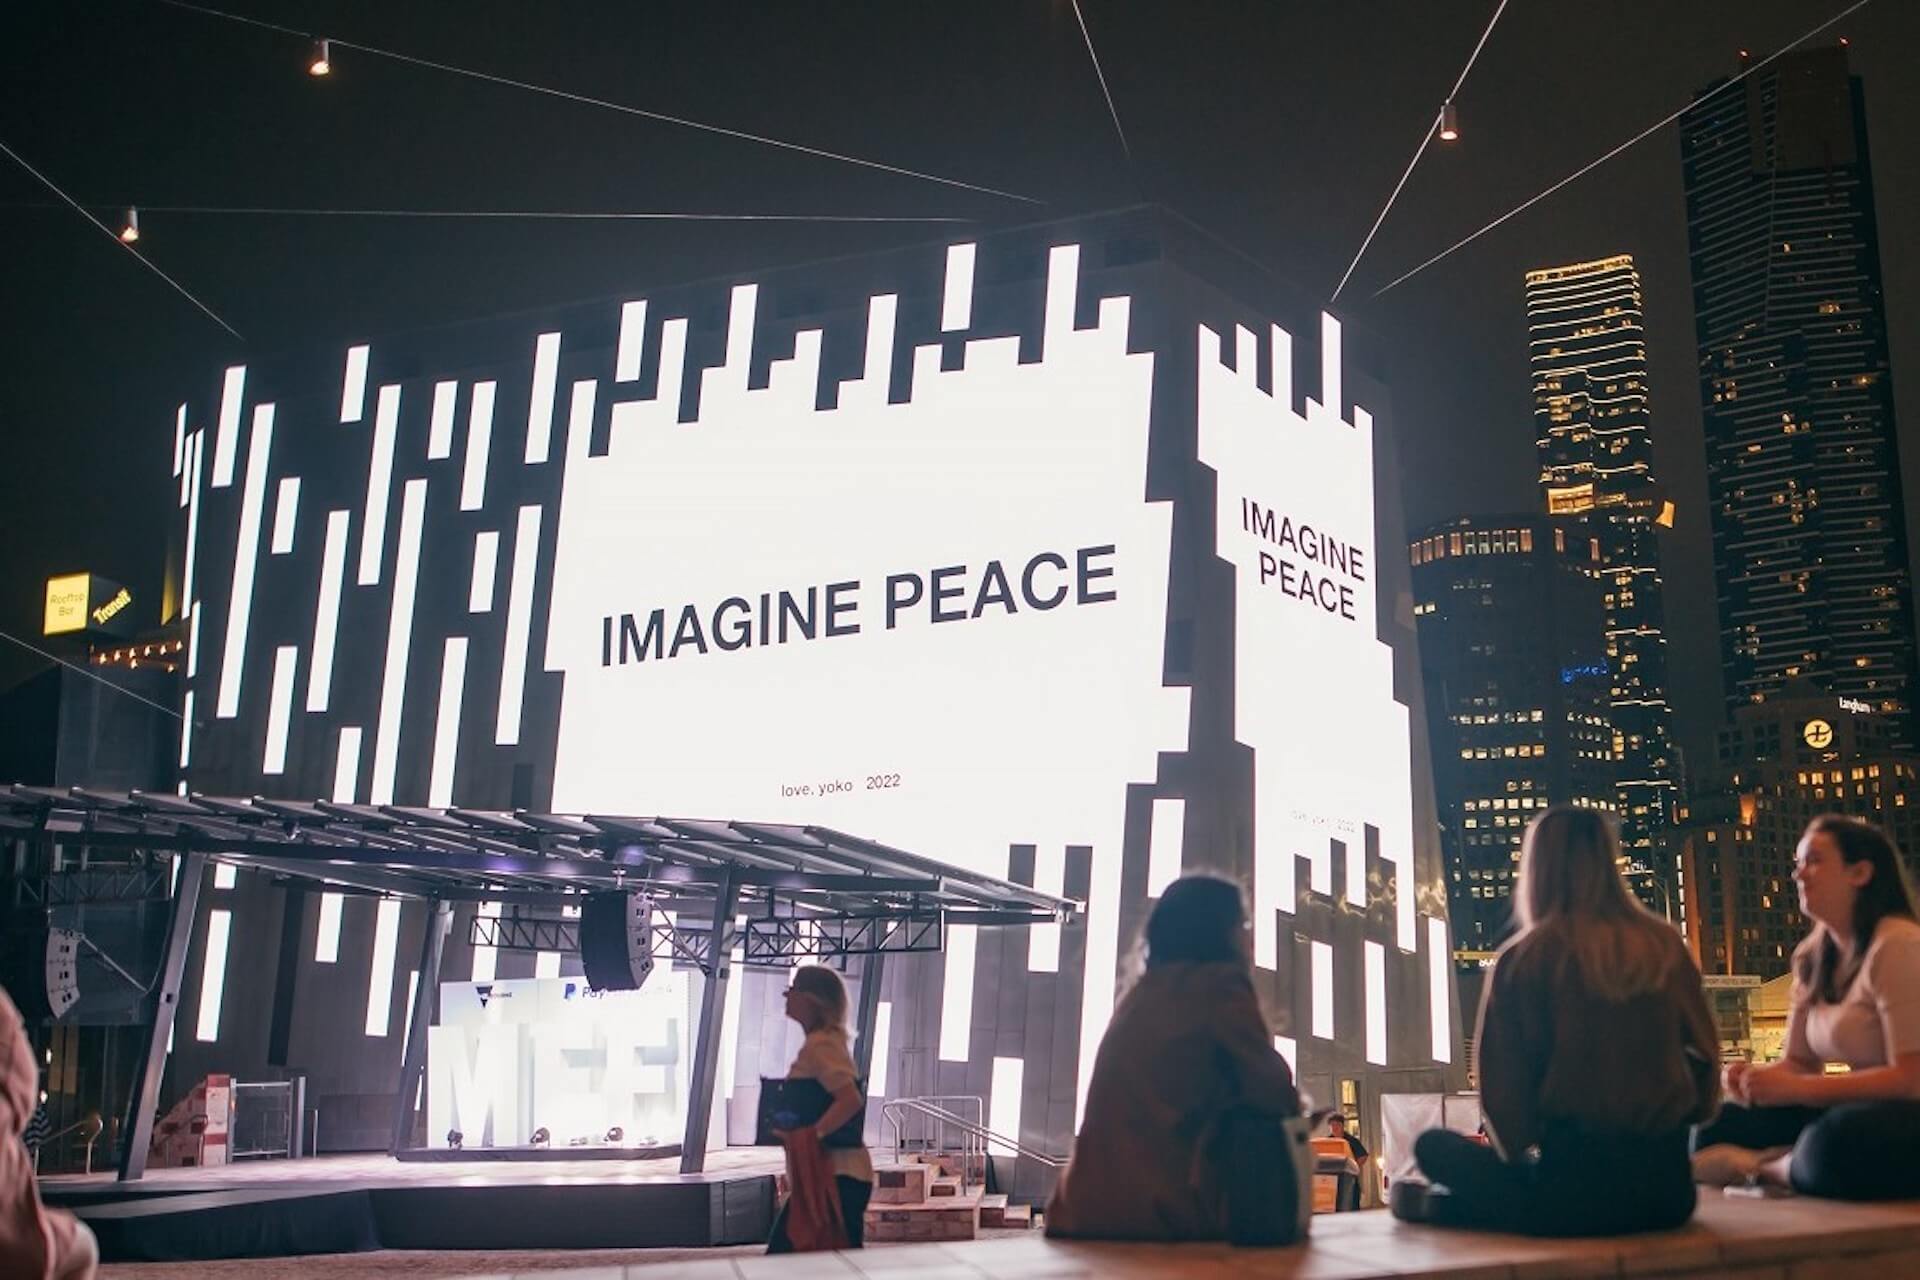 ヨーコ・オノが平和を願う「IMAGINE PEACE」キャンペーンを世界各地で実施｜シルクスクリーン・プリントをチャリティ制作 art220315_yoko-ono-imagine-peace-06